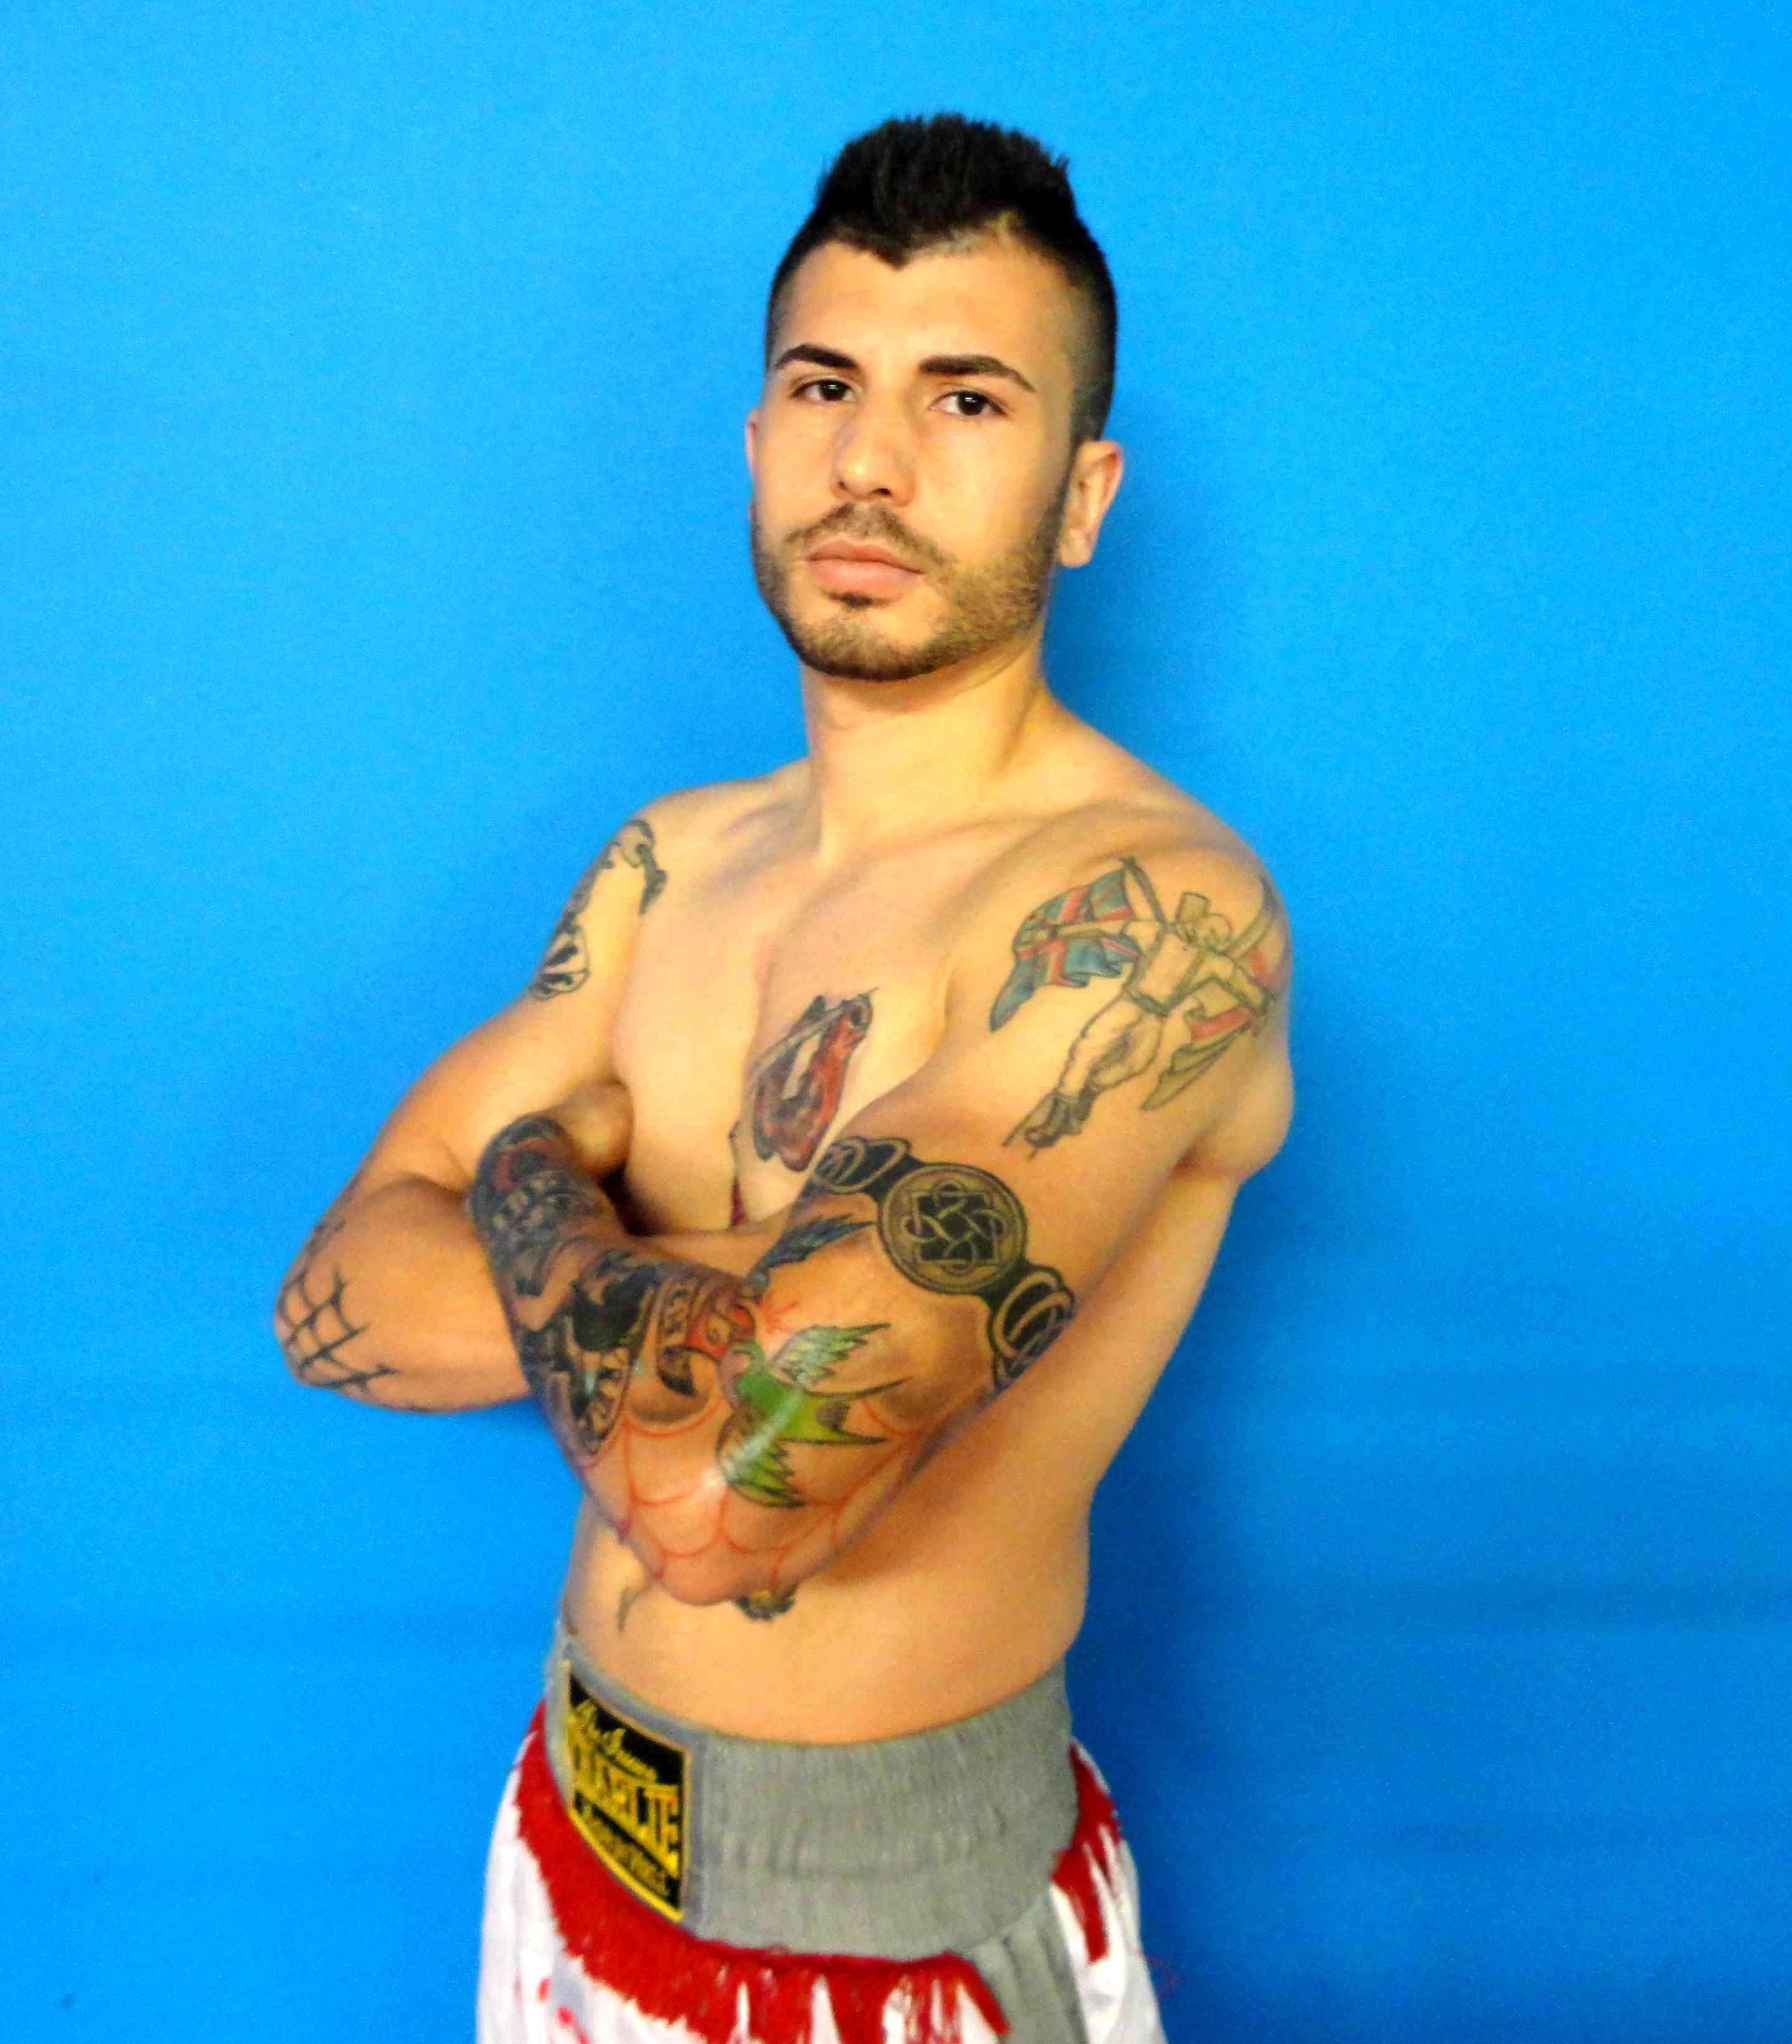 El boxeador profesional de Martorell, Marc Vidal, aspirante al título del pluma